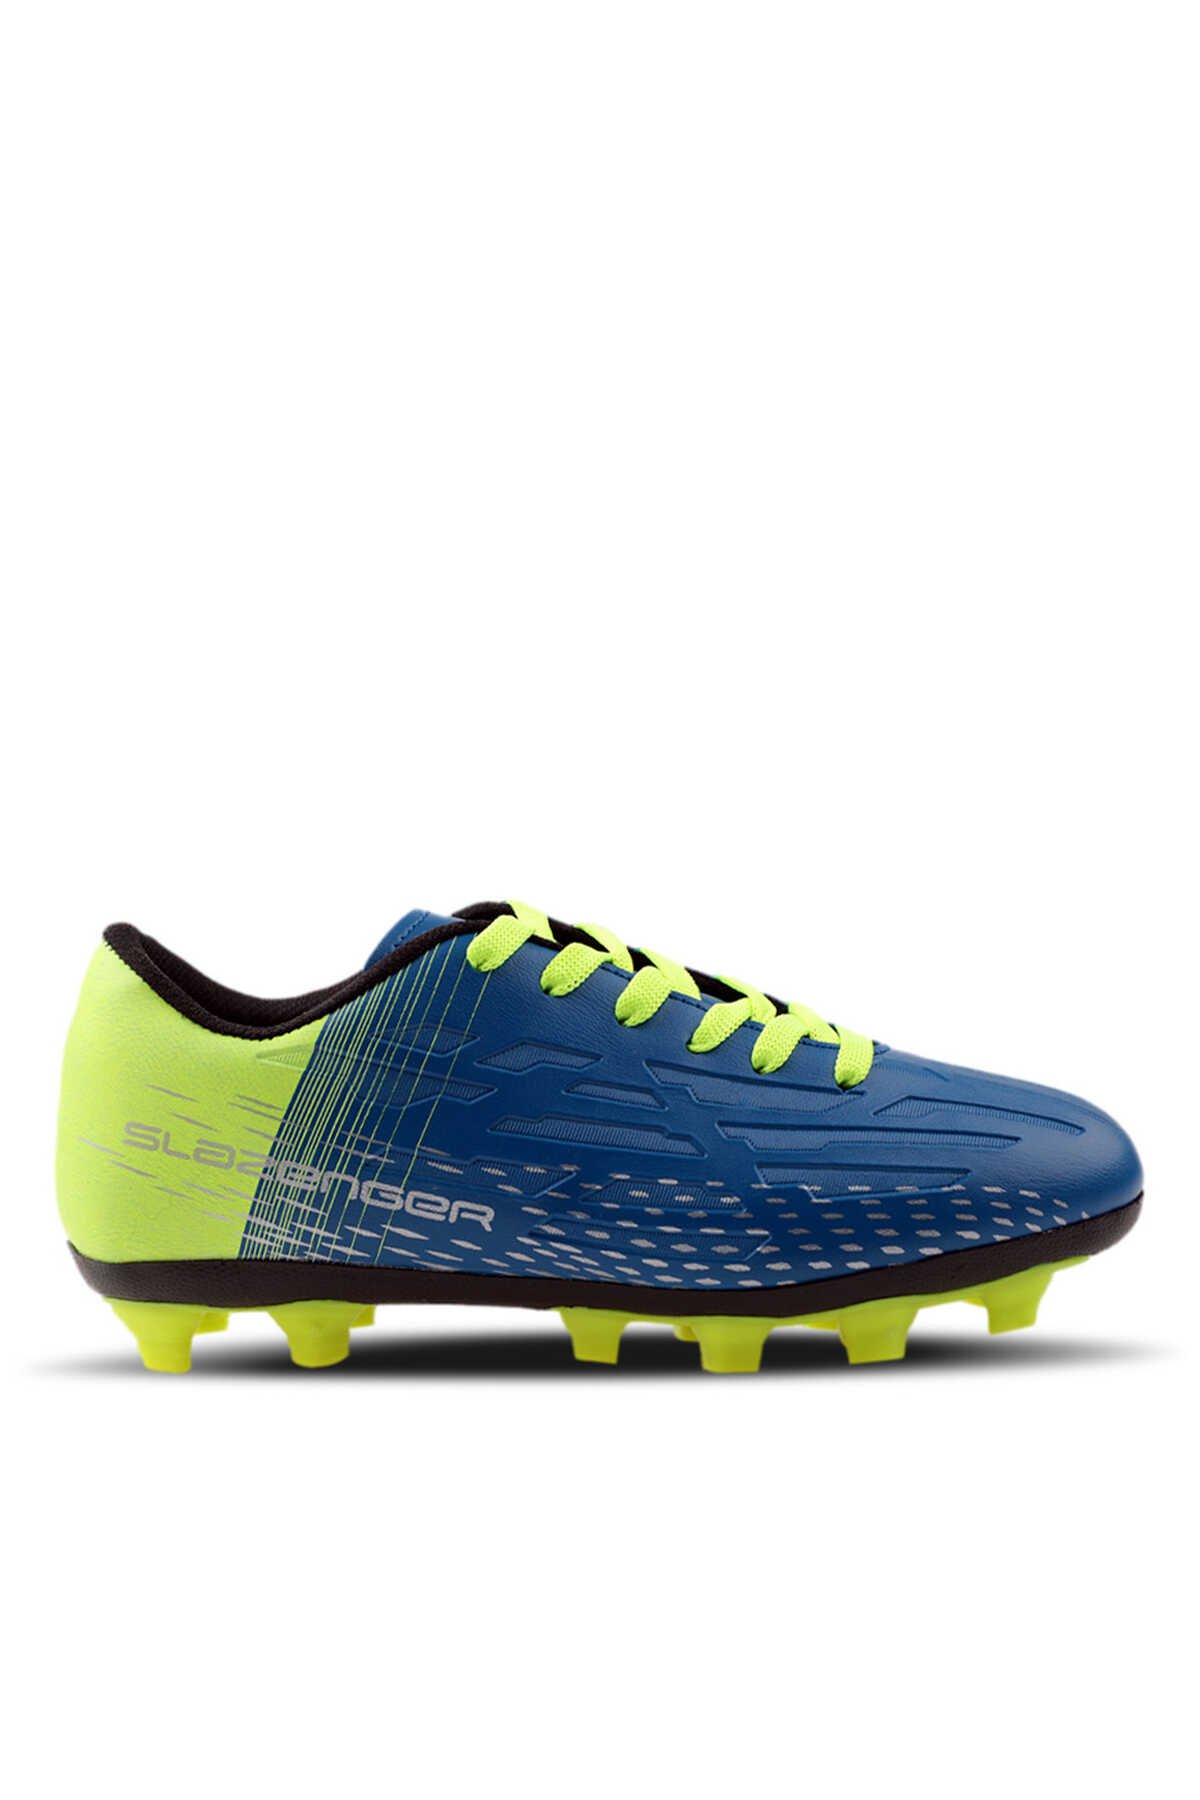 Slazenger - SCORE I KR Futbol Erkek Krampon Ayakkabı Mavi / Sarı